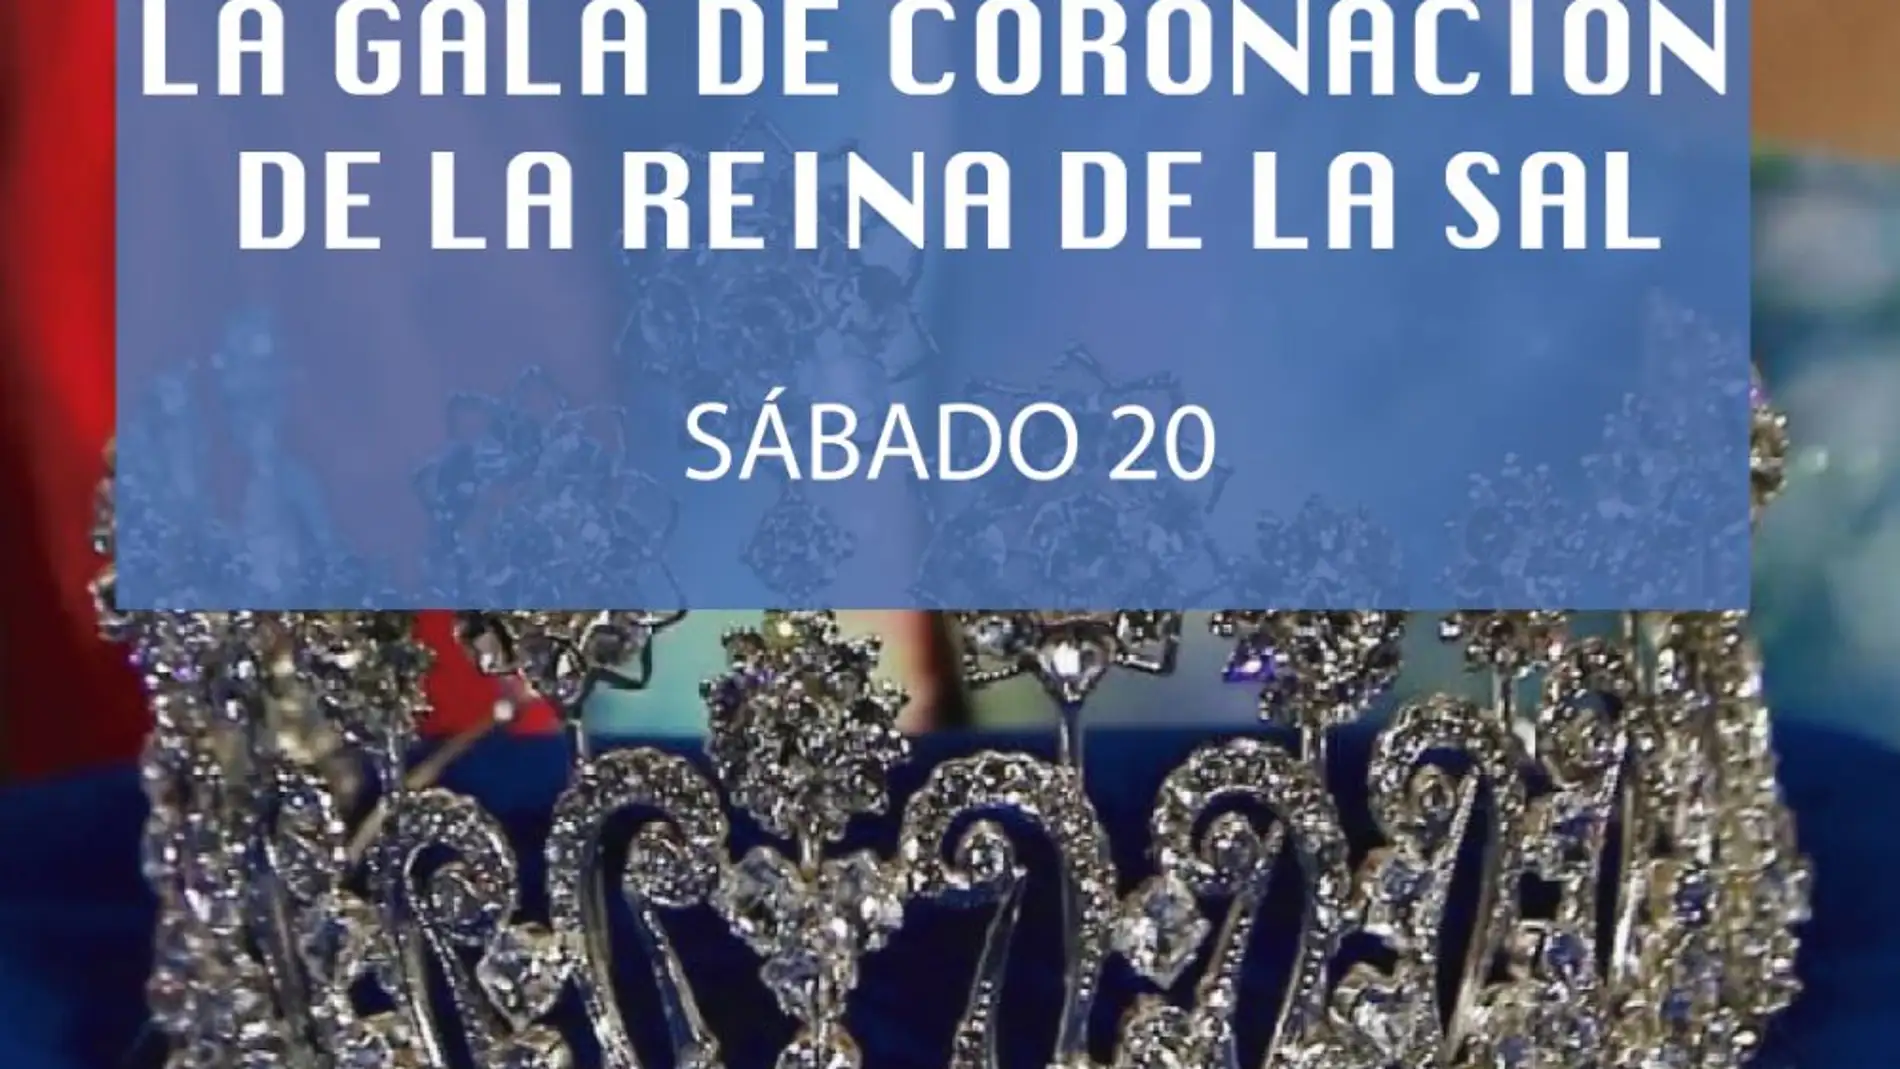 La gala de coronación de la reina de la sal será el sábado 20 de noviembre 